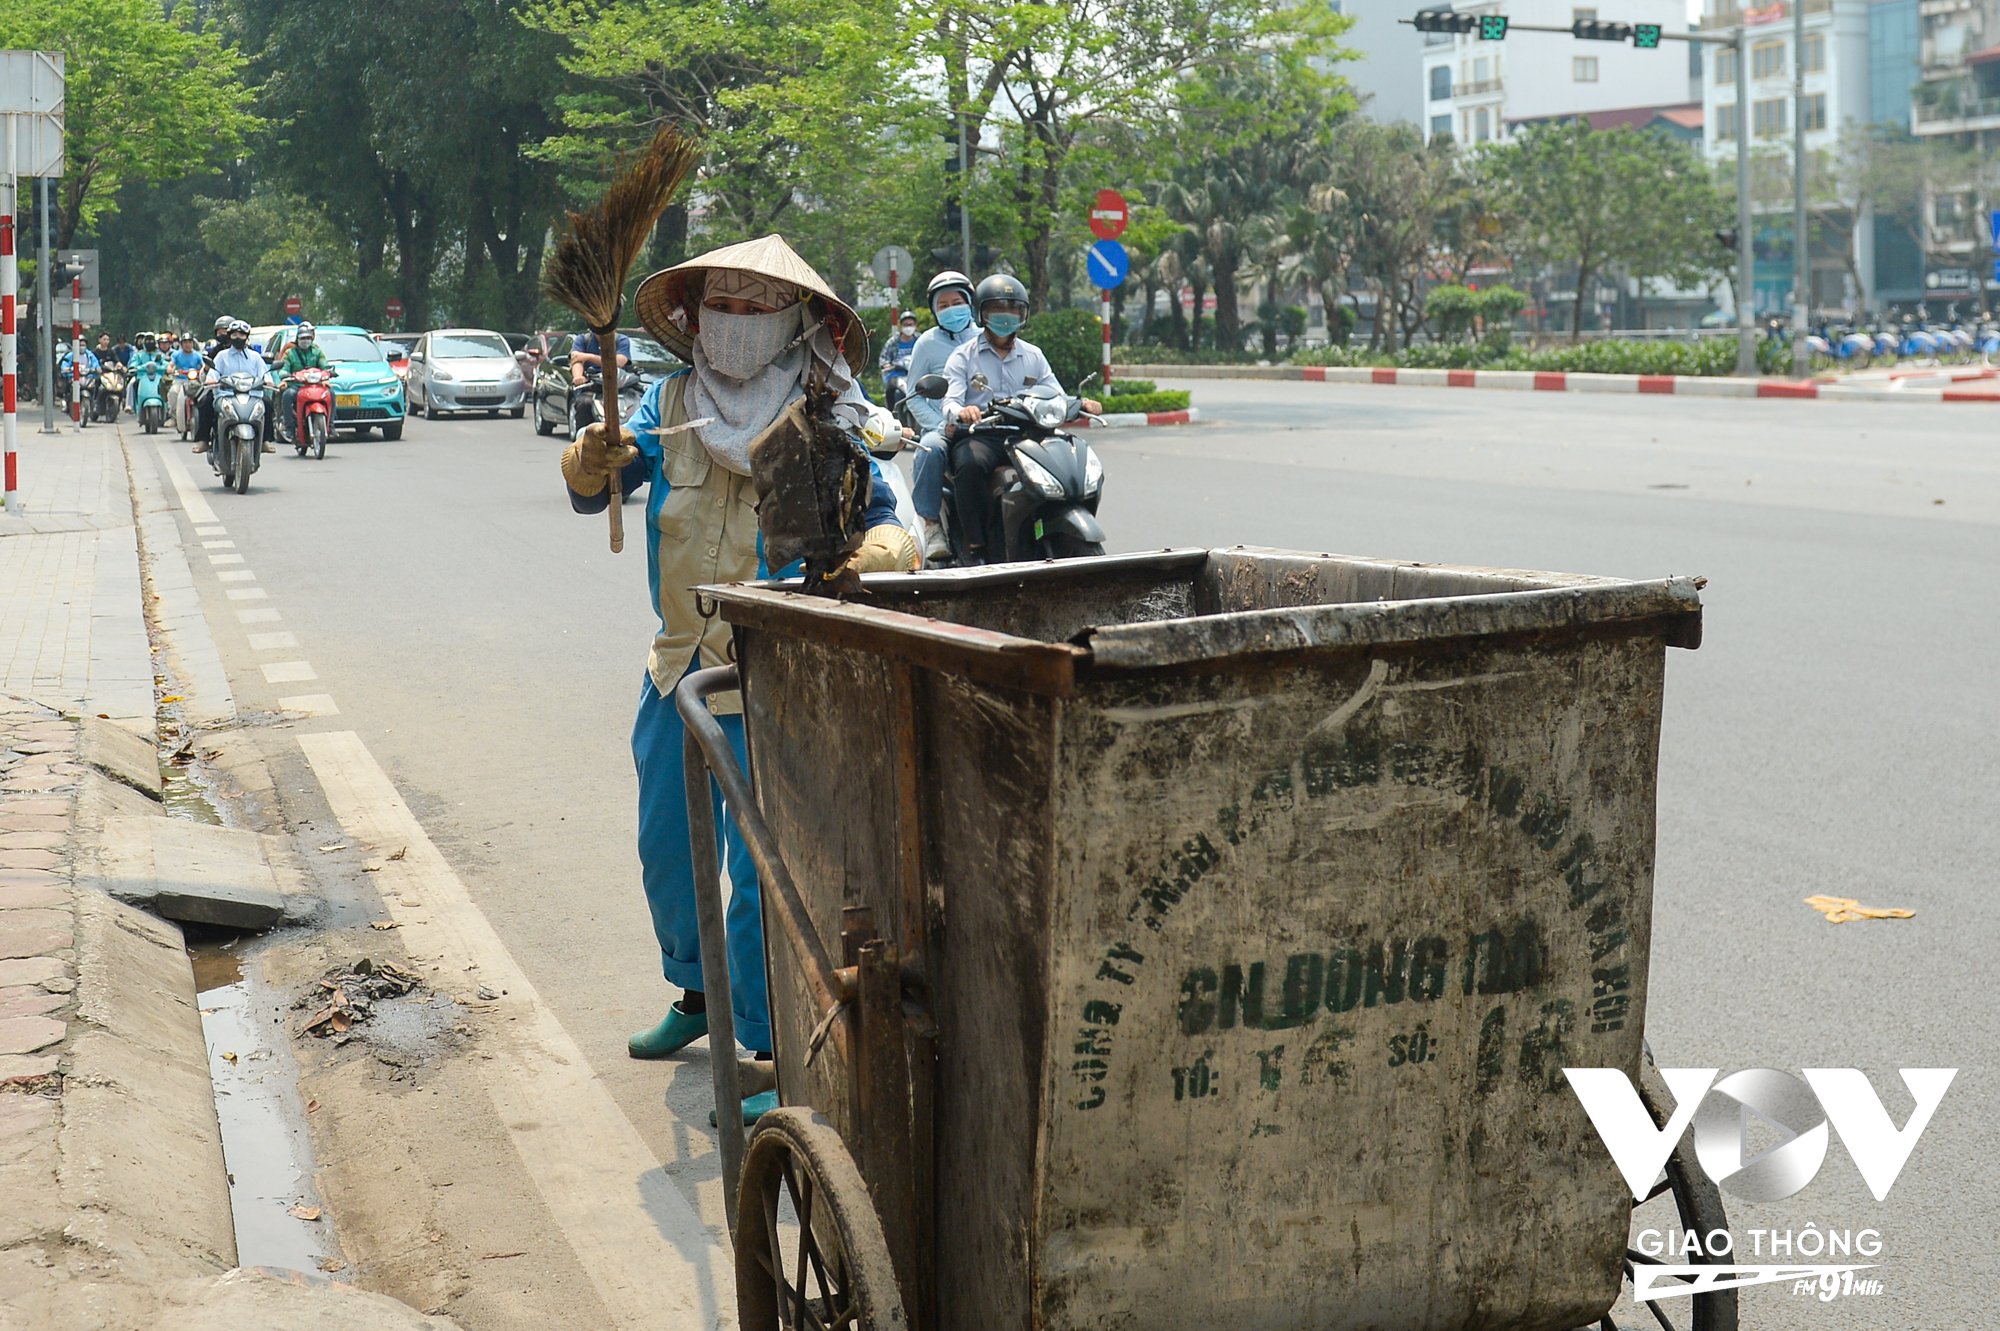 Ở một góc khác, người công nhân vệ sinh môi trường vẫn đang cần mẫn thực hiện công việc.